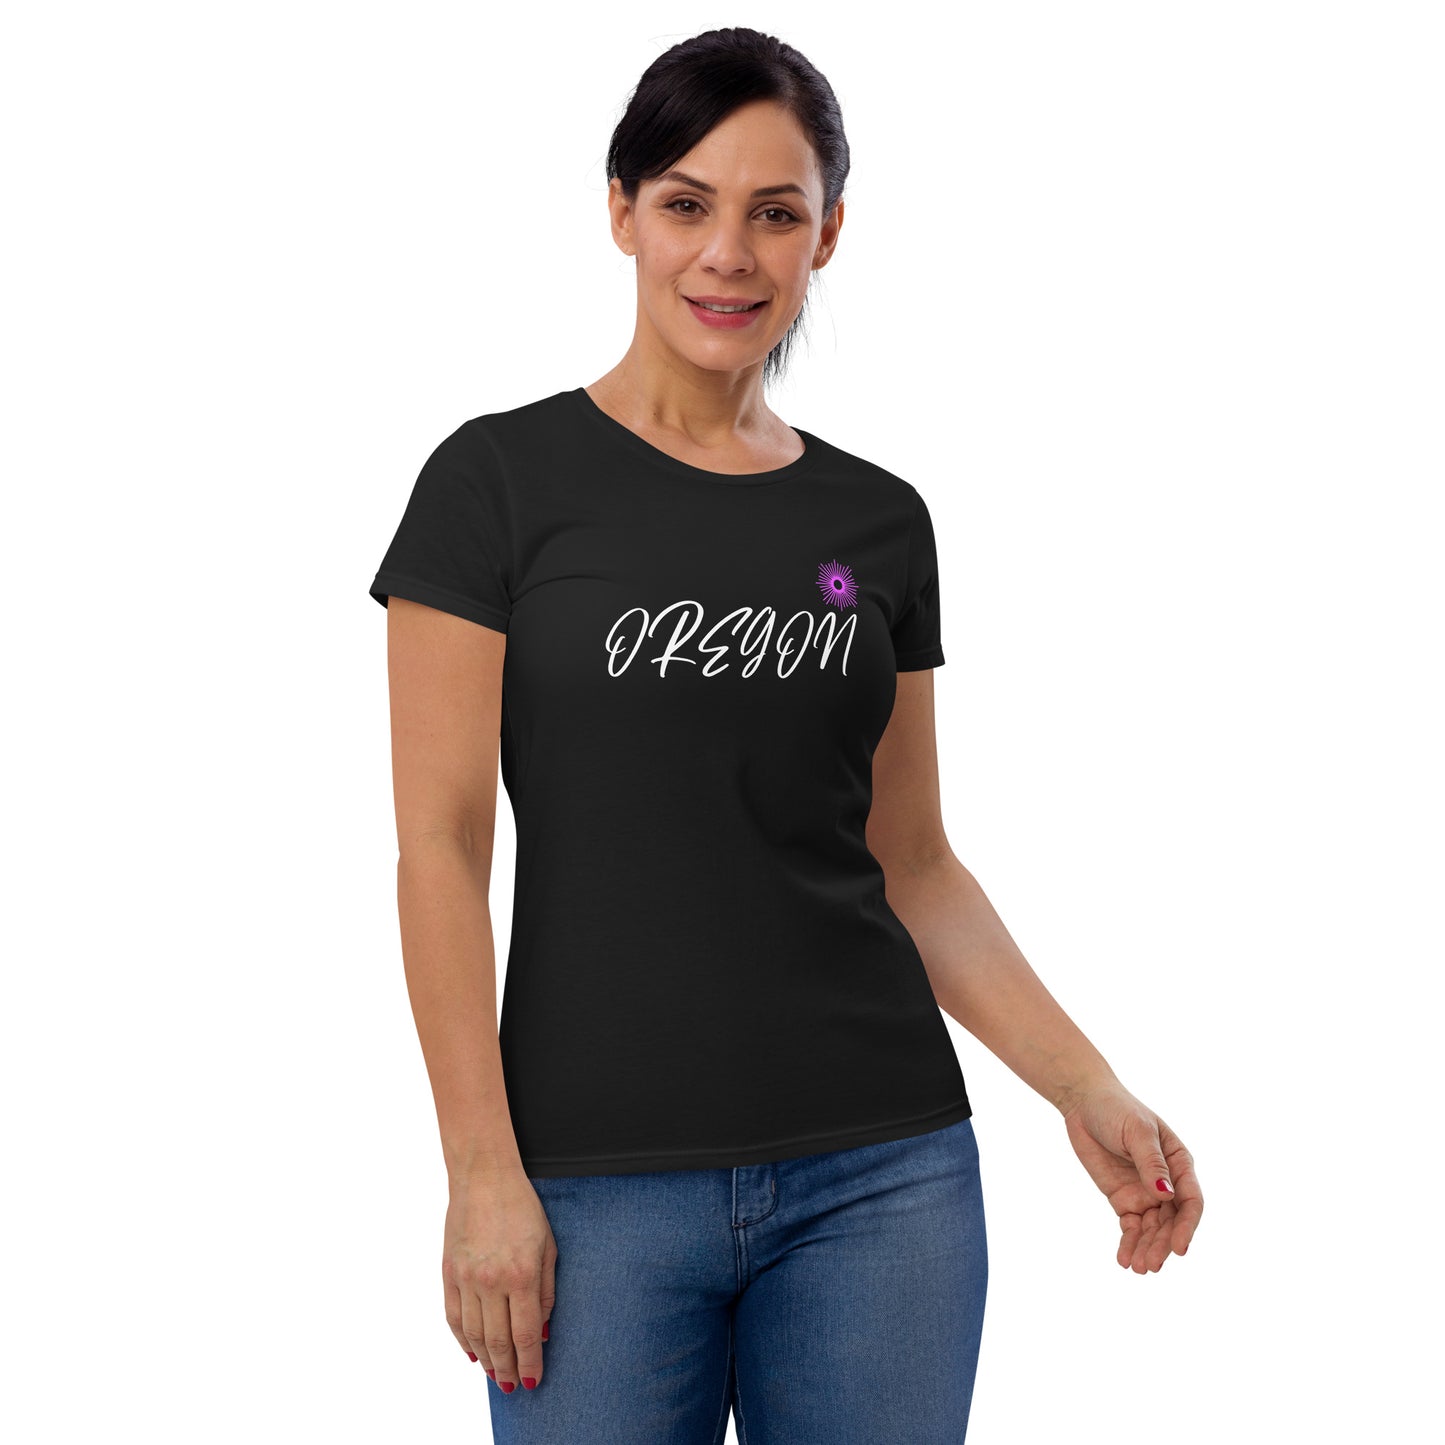 Oregon Star/Pink - Women's short sleeve t-shirt